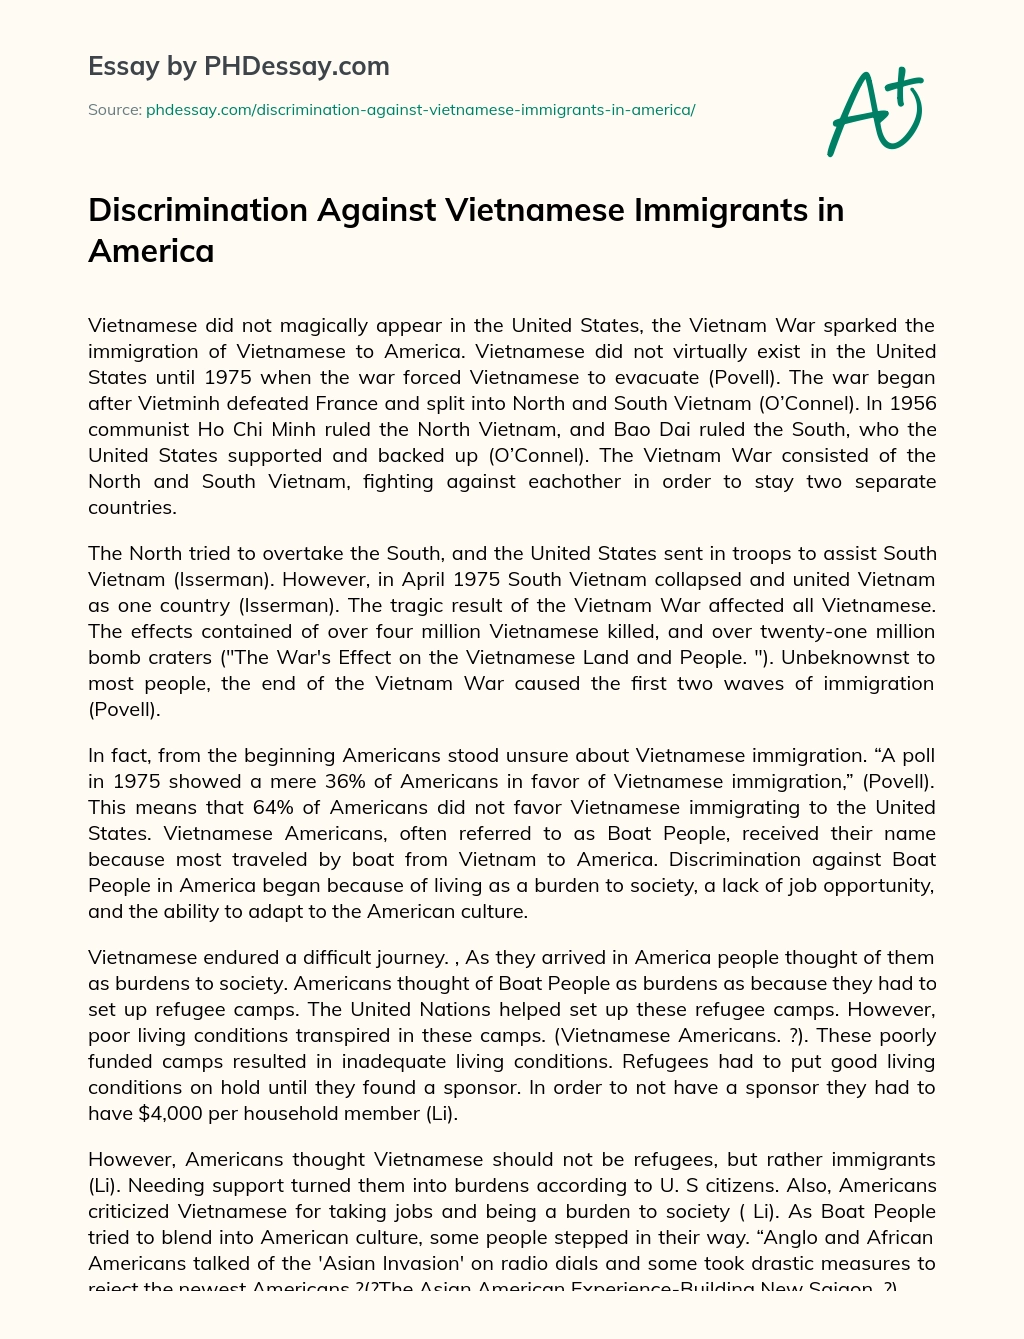 Discrimination Against Vietnamese Immigrants in America essay